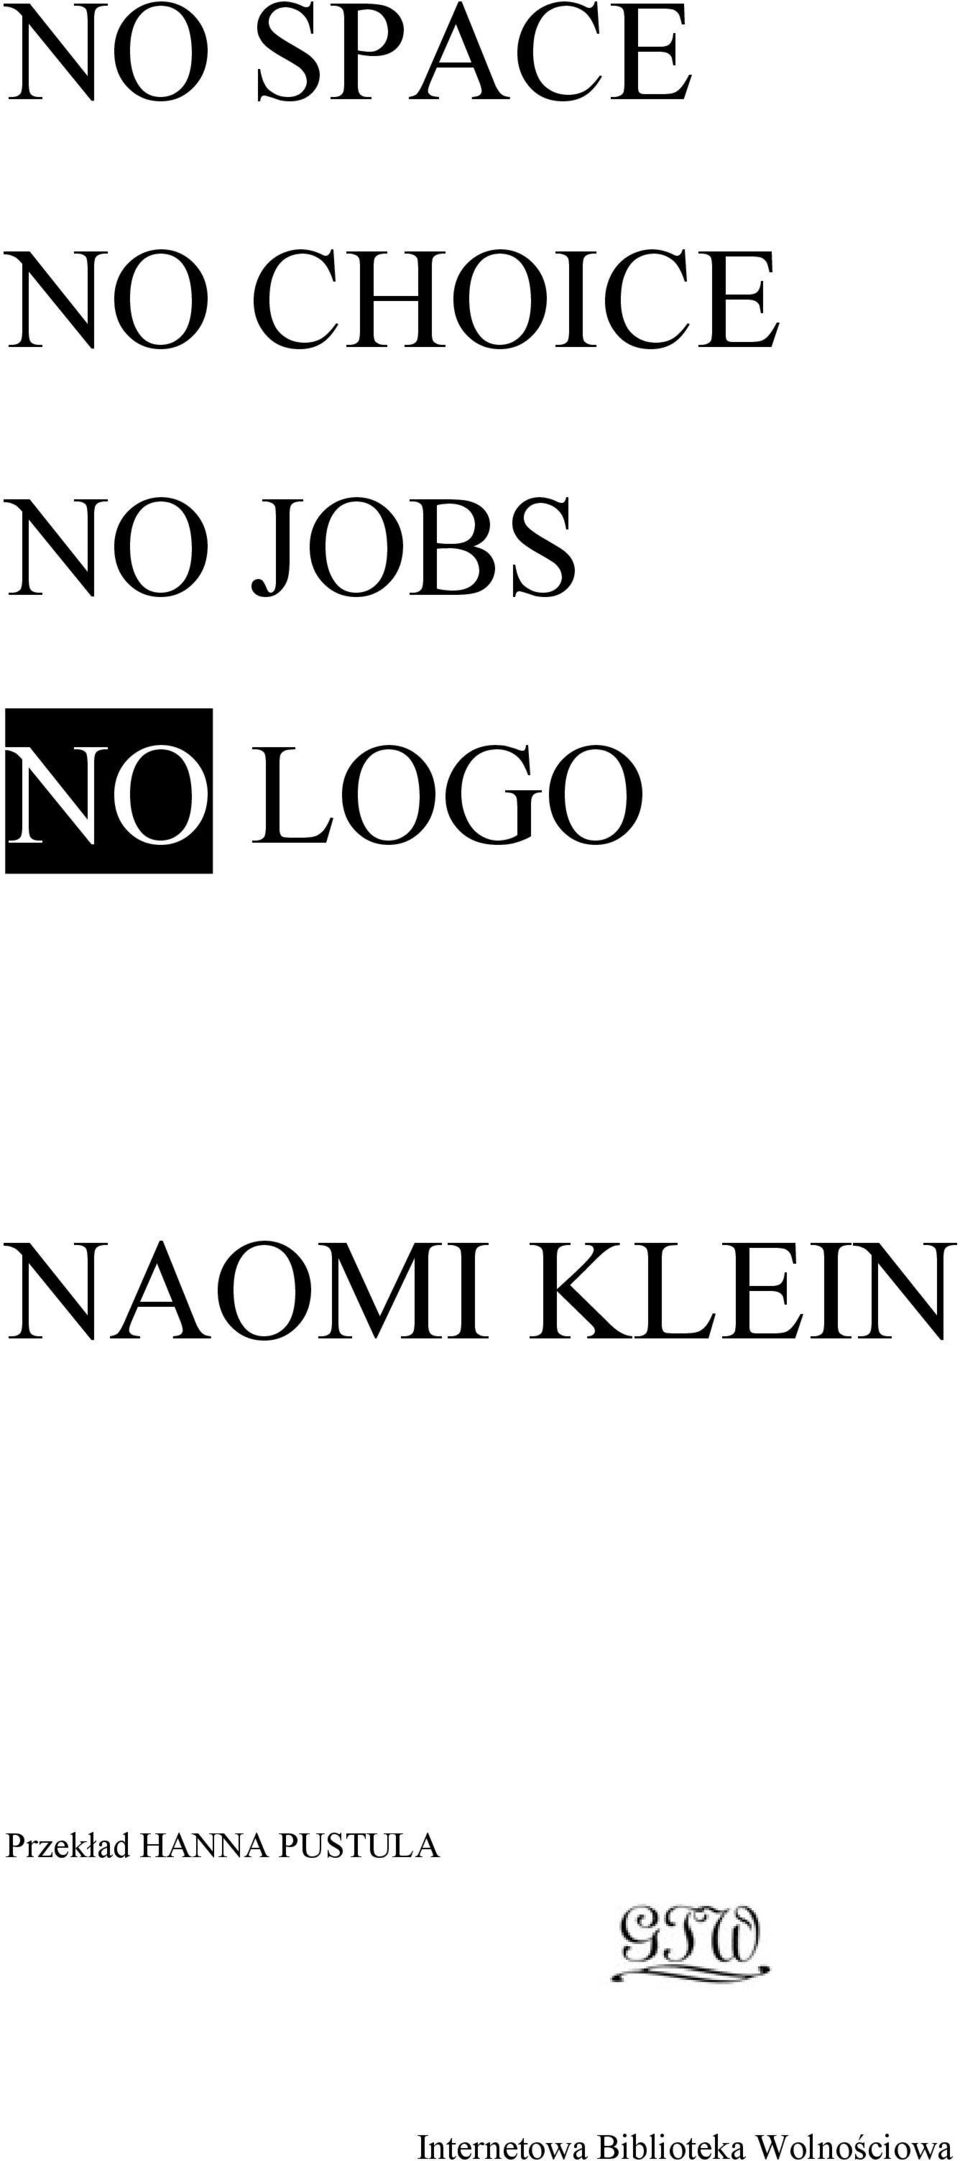 LOGO NAOMI KLEIN